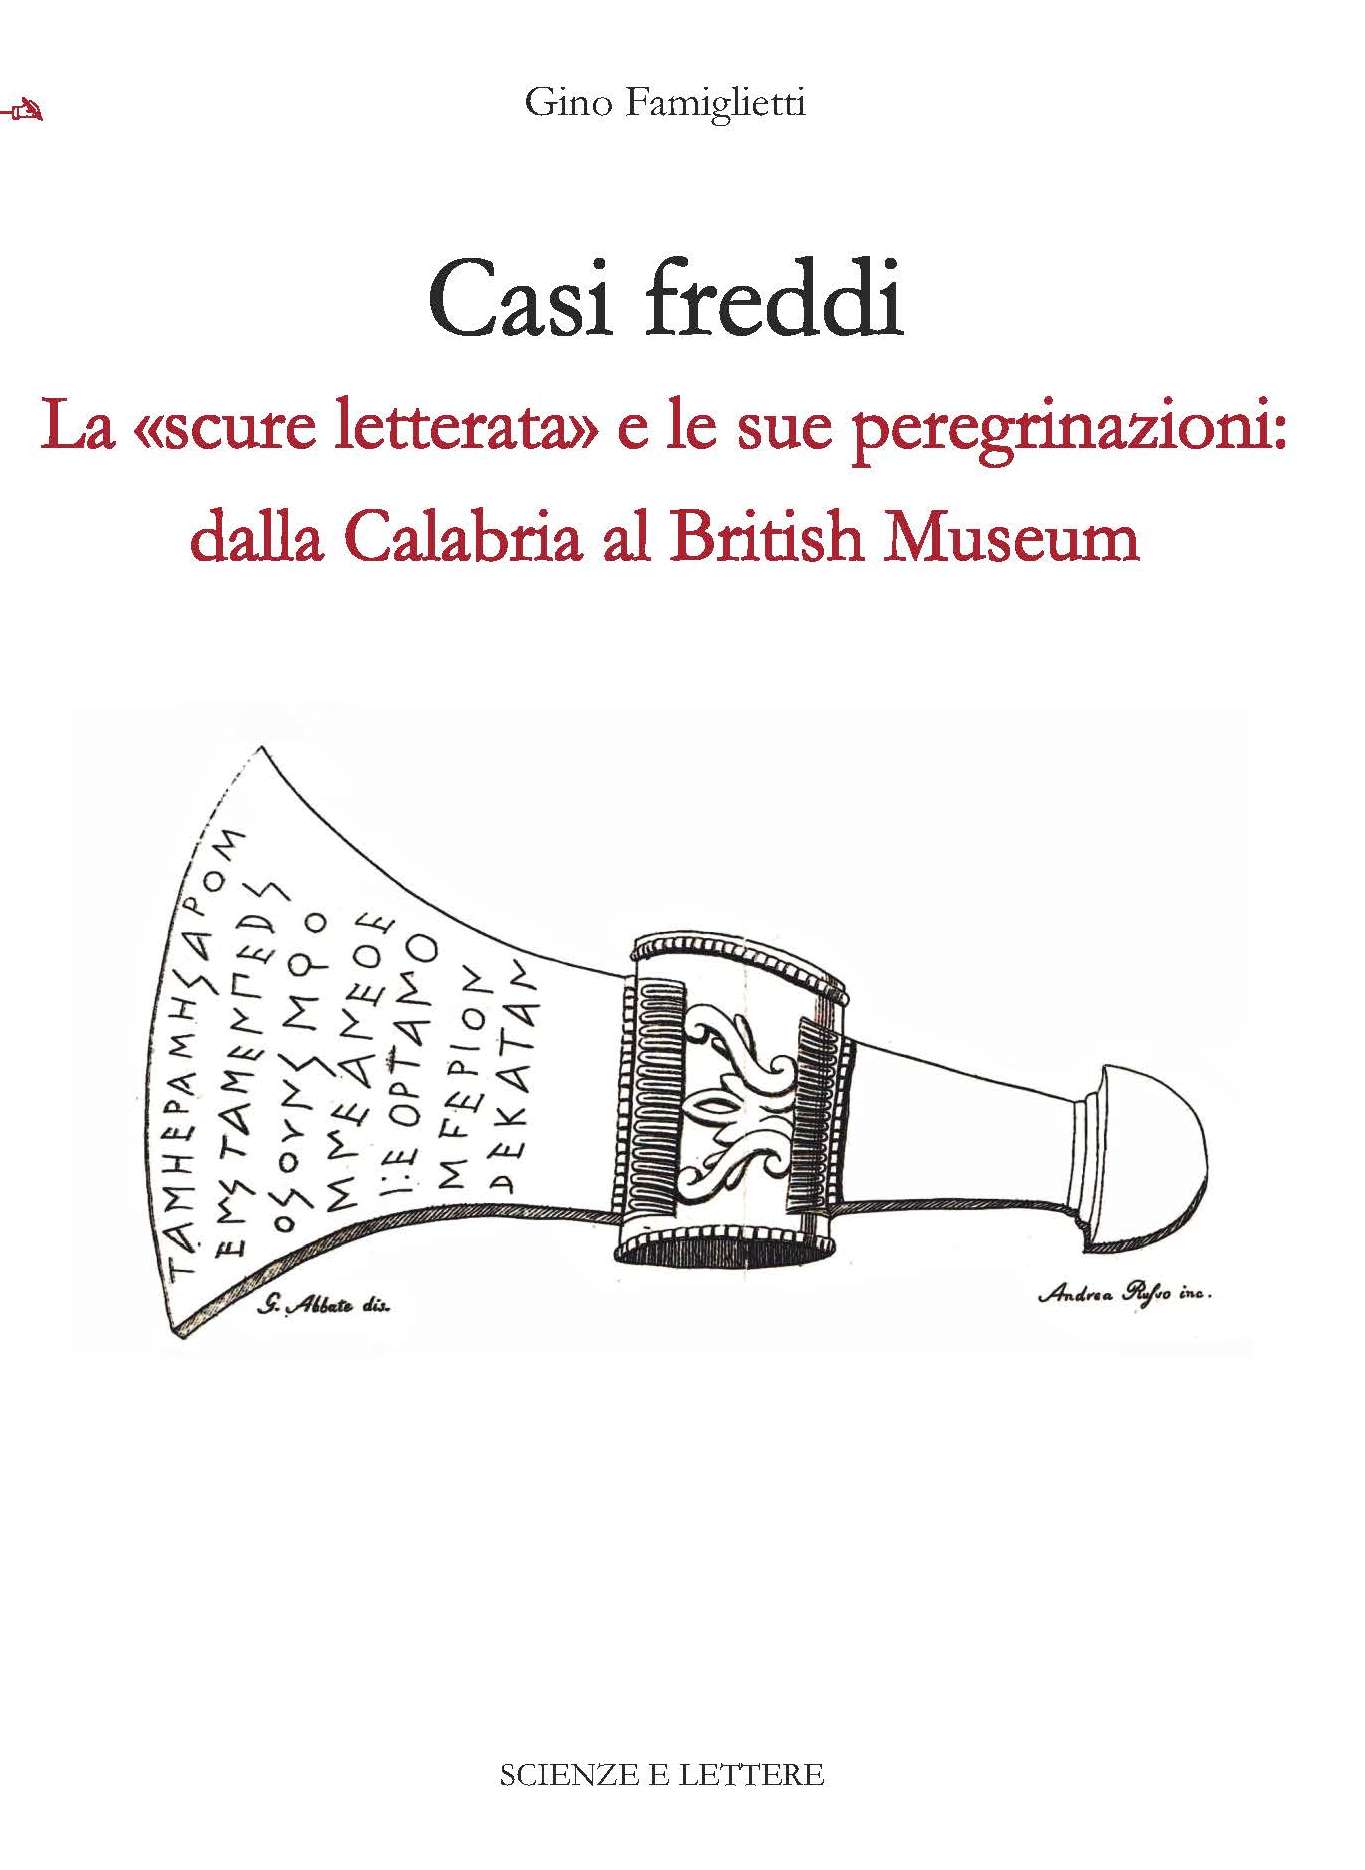 Casi Freddi 
La «scure letterata» e le sue peregrinazioni: dalla Calabria al British Museum - Una scuola per il patrimonio: questioni di metodo 3

